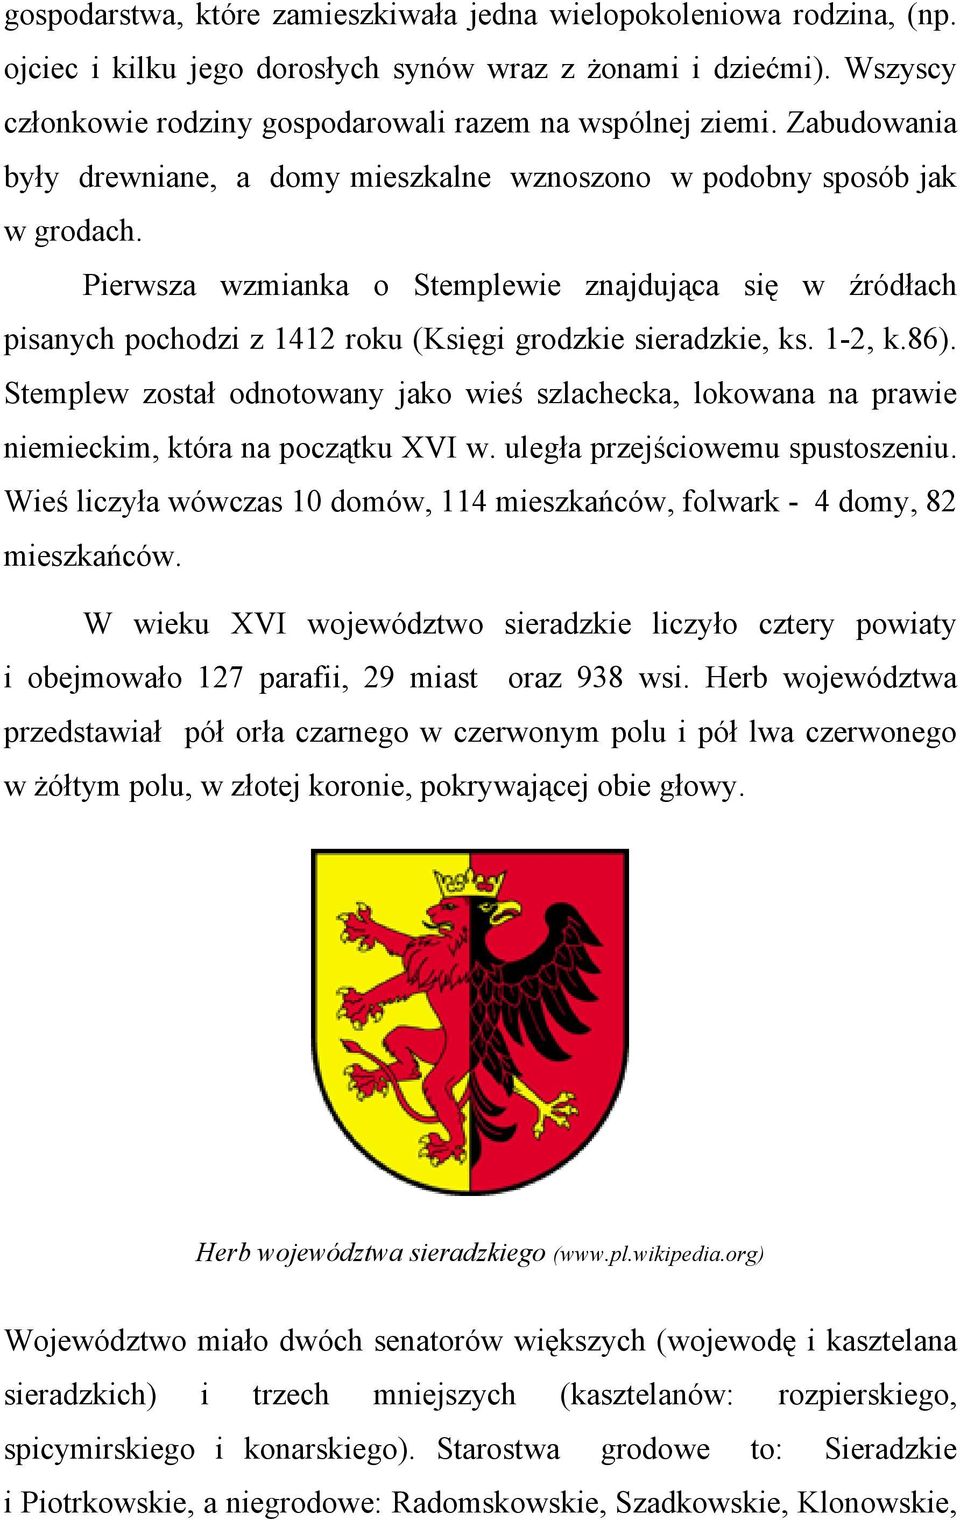 Pierwsza wzmianka o Stemplewie znajdująca się w źródłach pisanych pochodzi z 1412 roku (Księgi grodzkie sieradzkie, ks. 1-2, k.86).